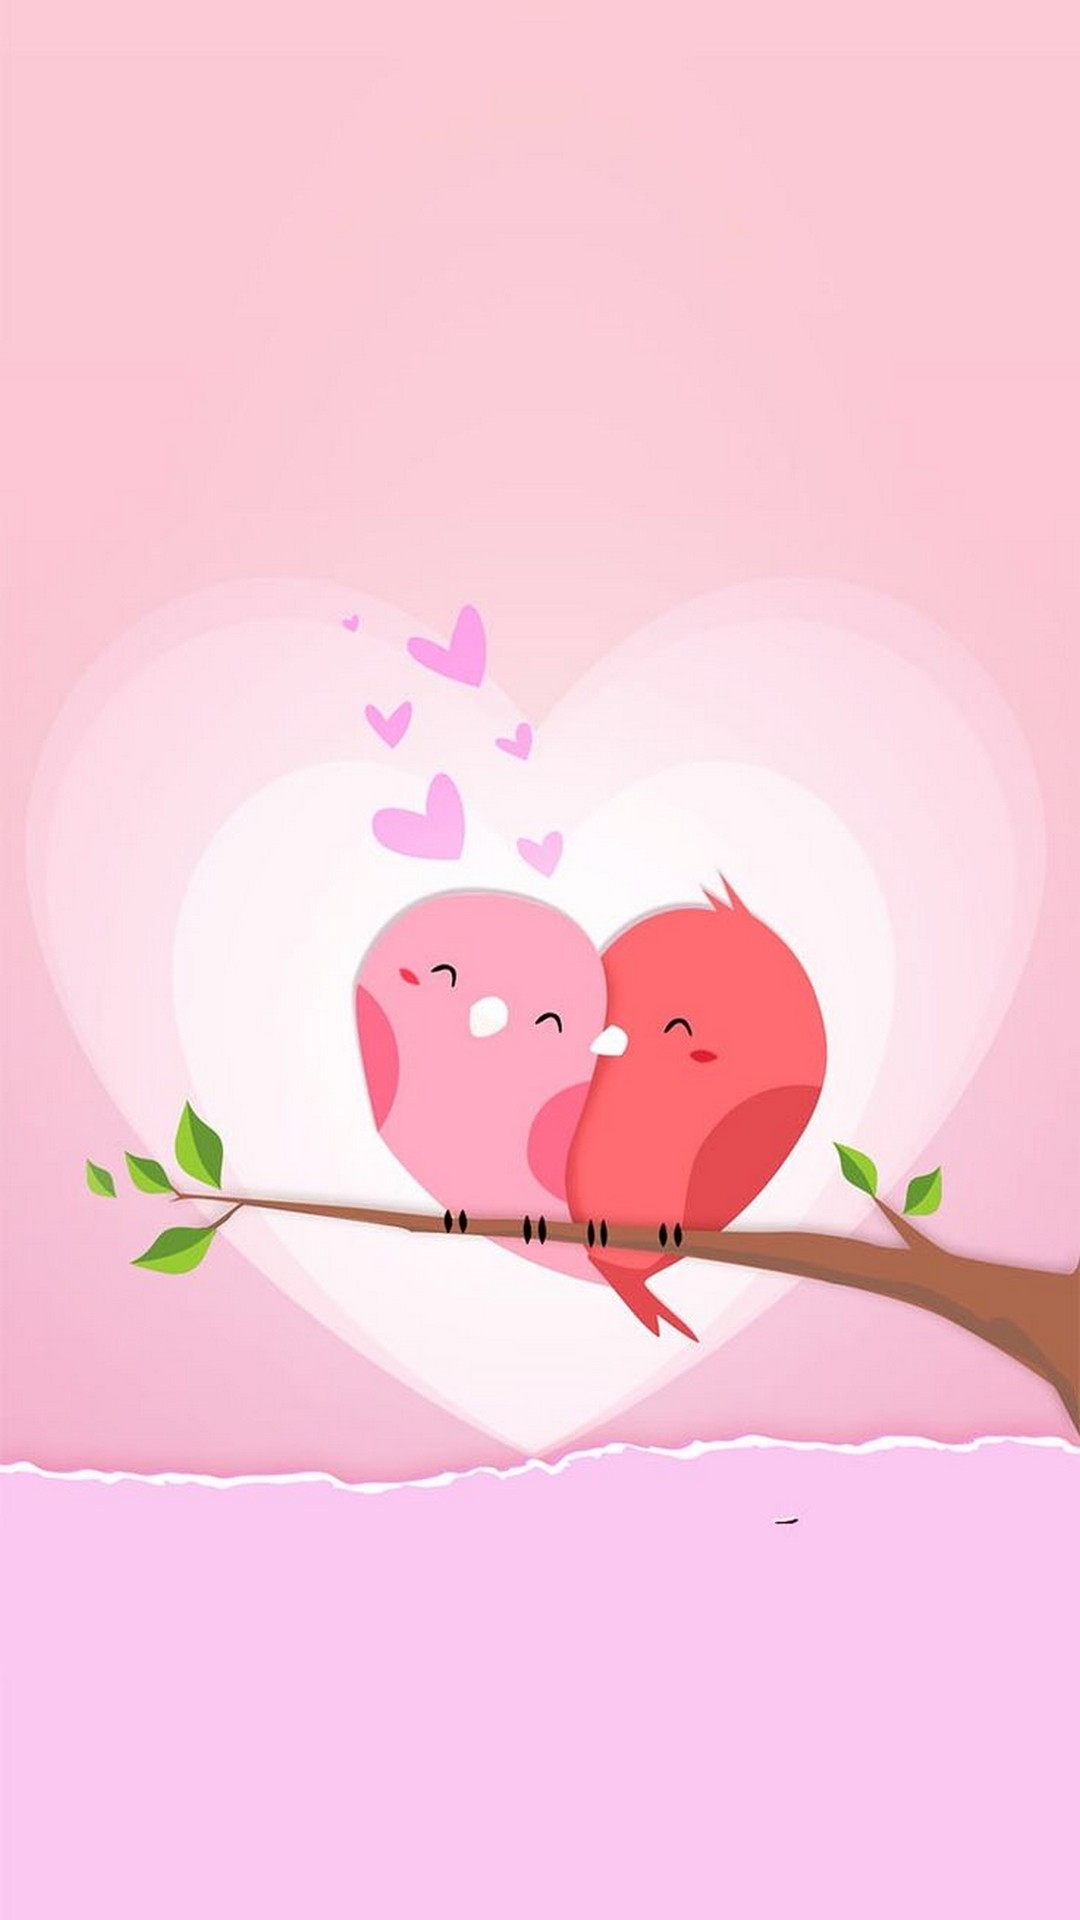 ロマンチックな壁紙,ピンク,漫画,図,愛,心臓